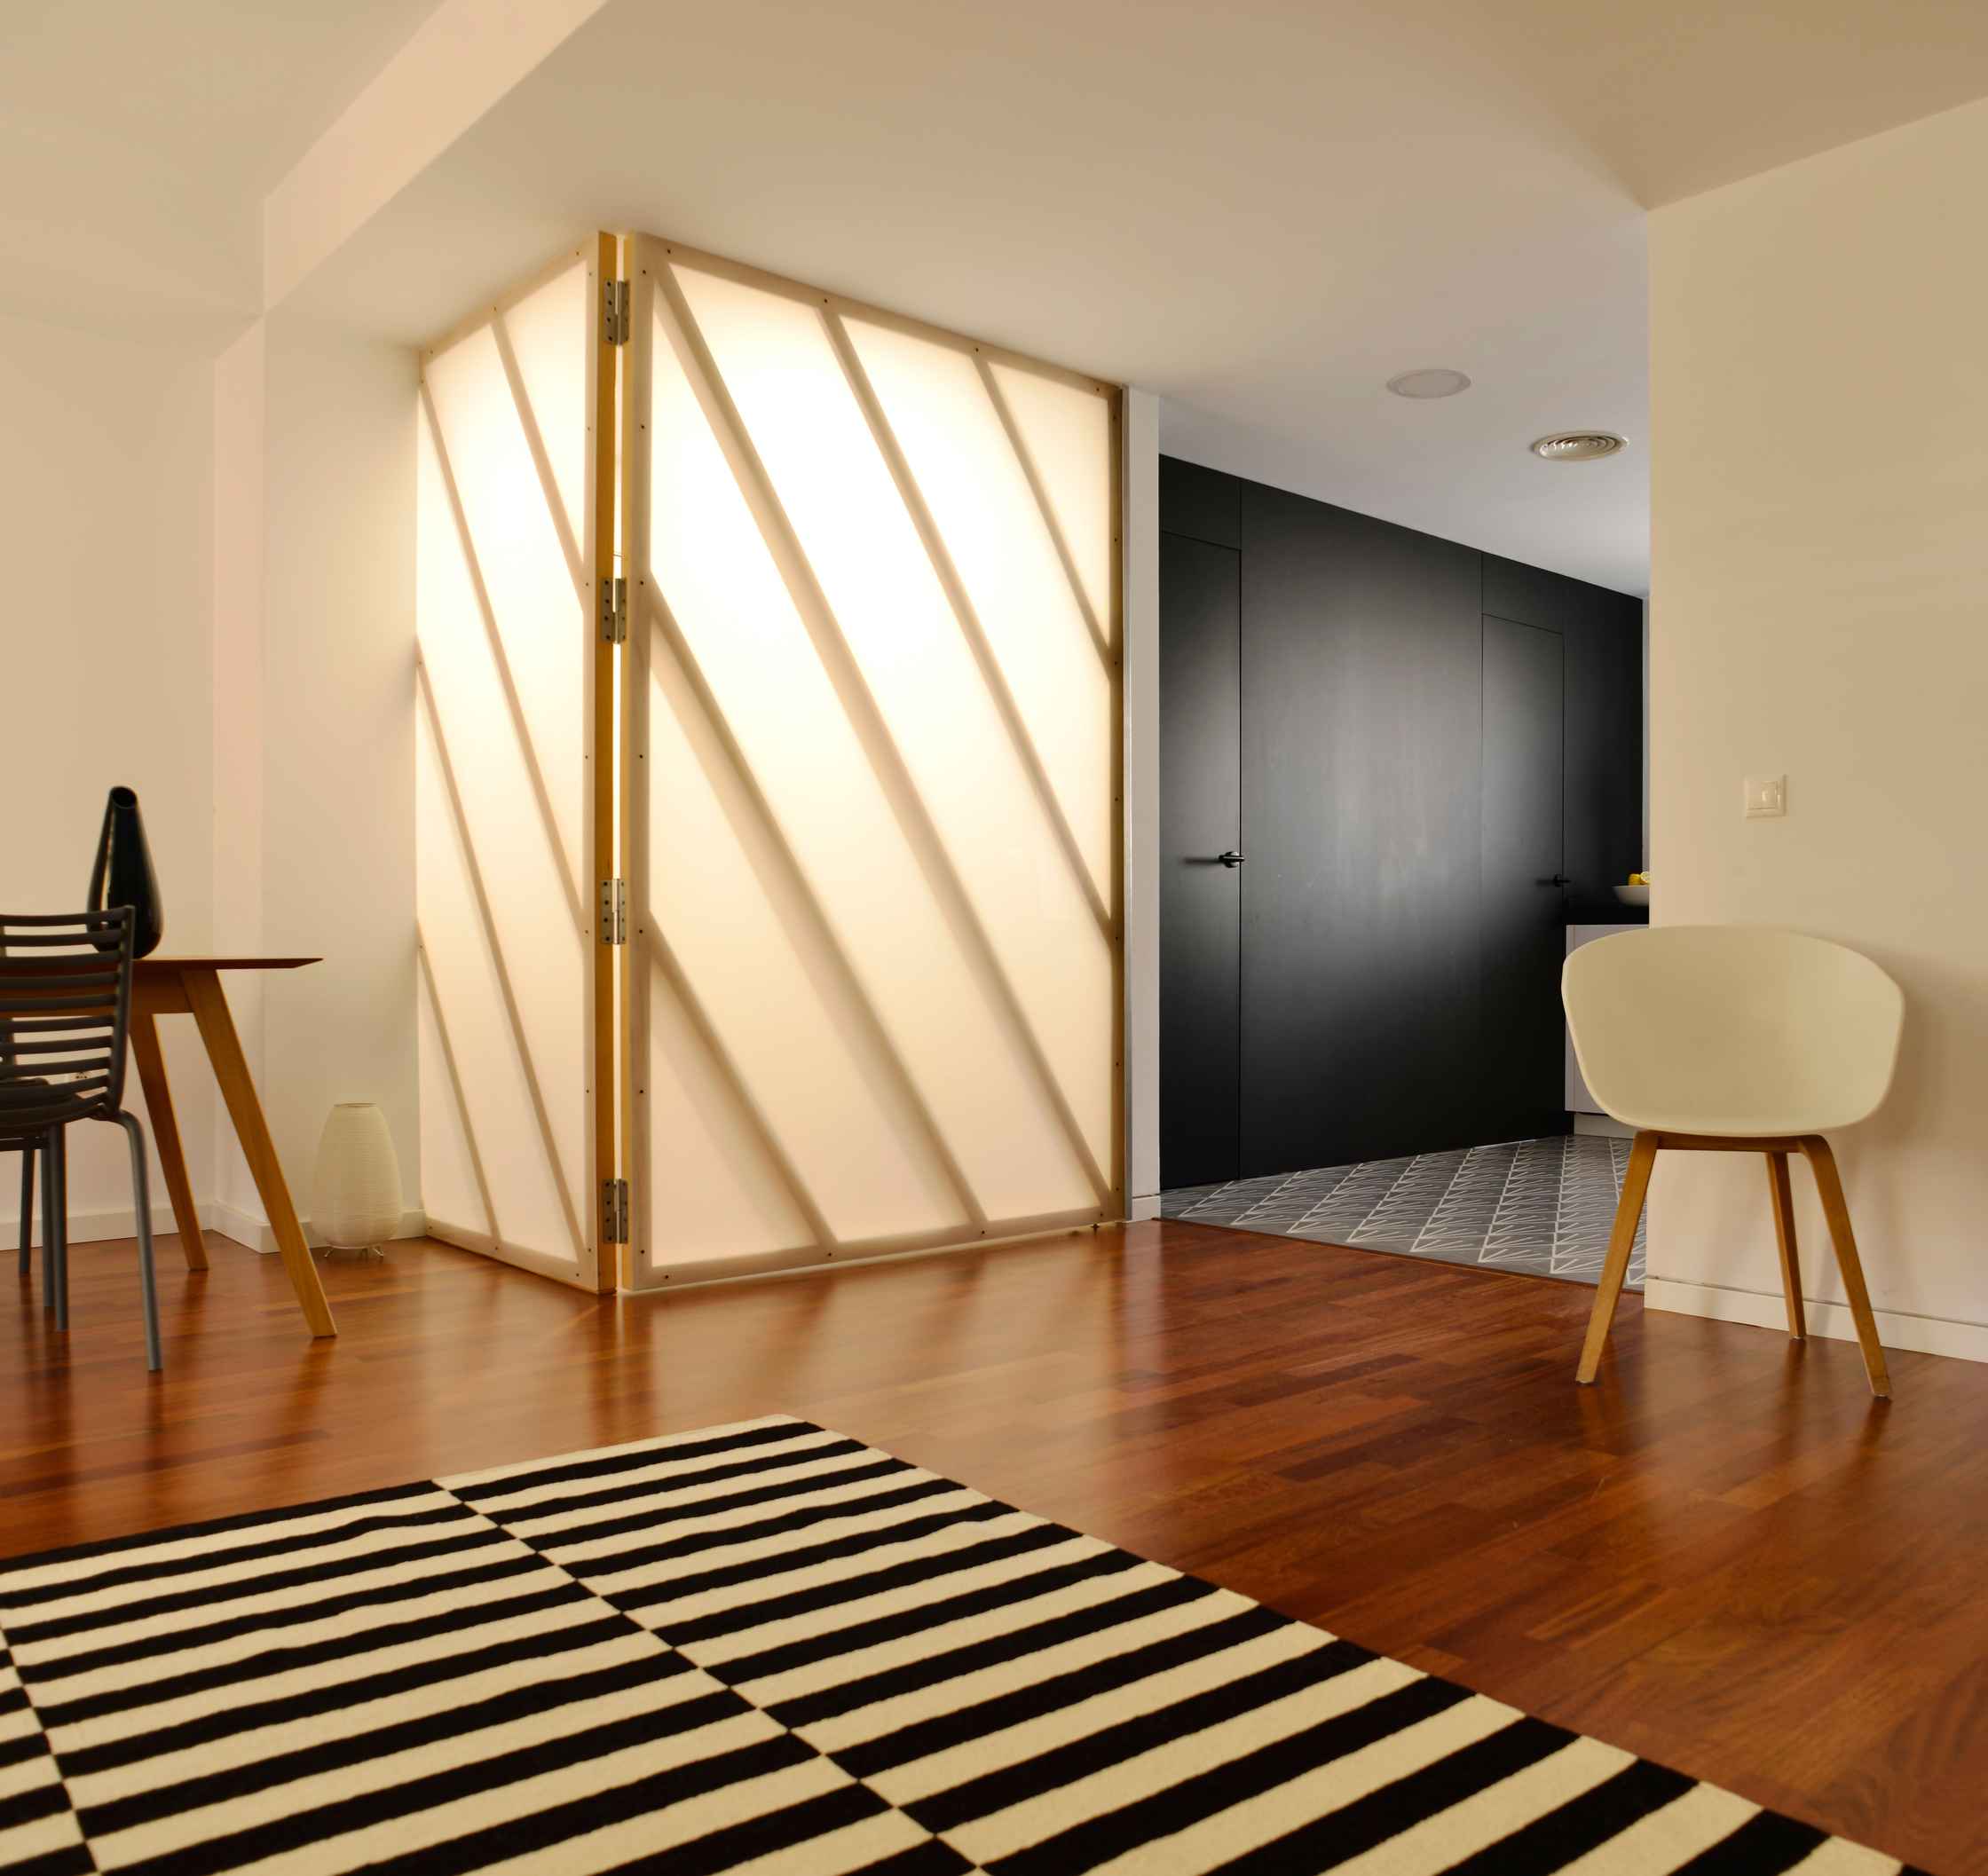 Reforma integral e interiorismo con un diseño actual y contemporáneo. En LAP arquitectos buscamos crear espacios singulares, confortables y creativos.